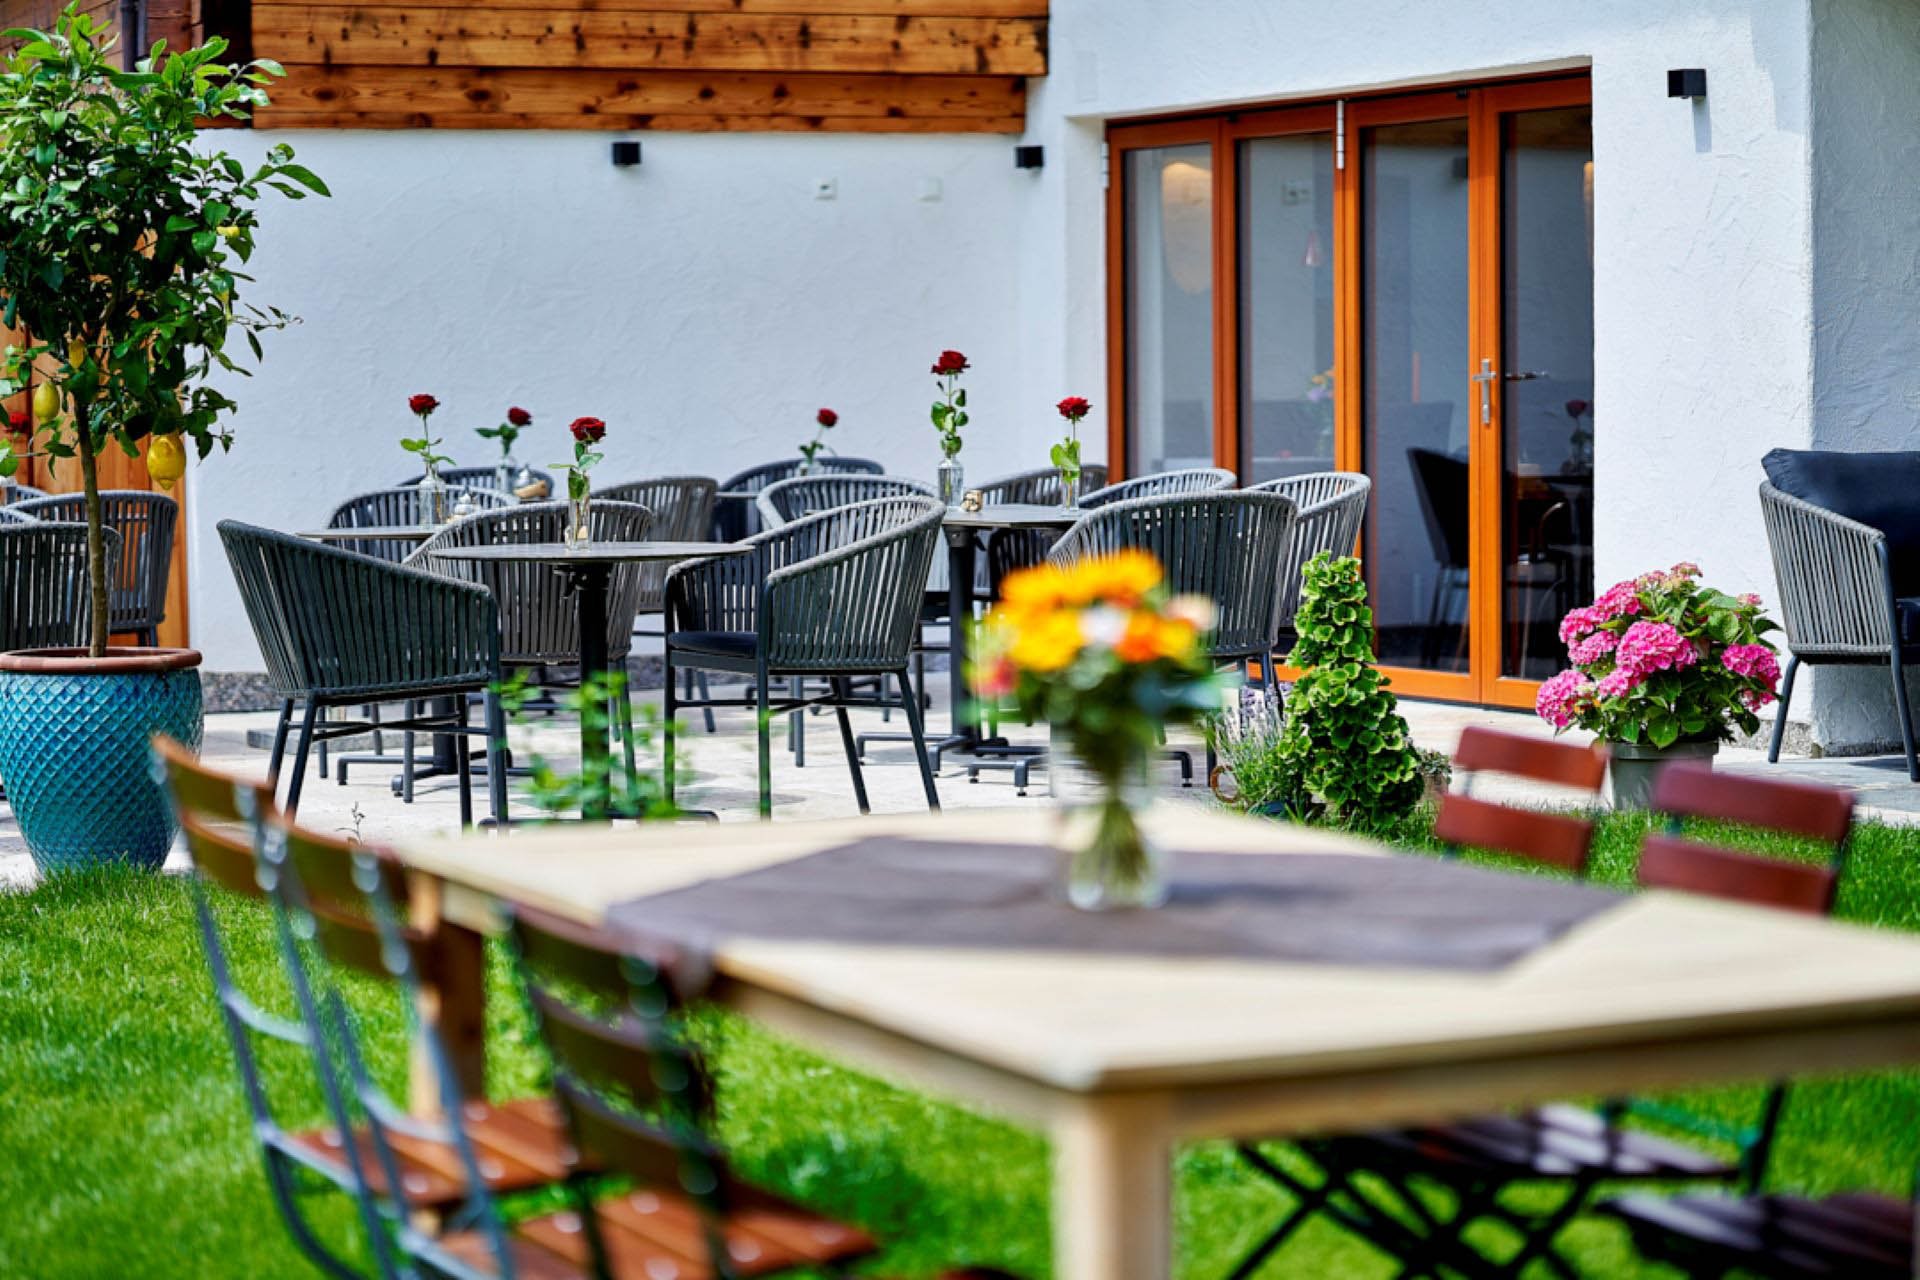 Café Kaffeesatz, Schoenau am Koenigssee, Terrasse mit gelben Blumen in Vase